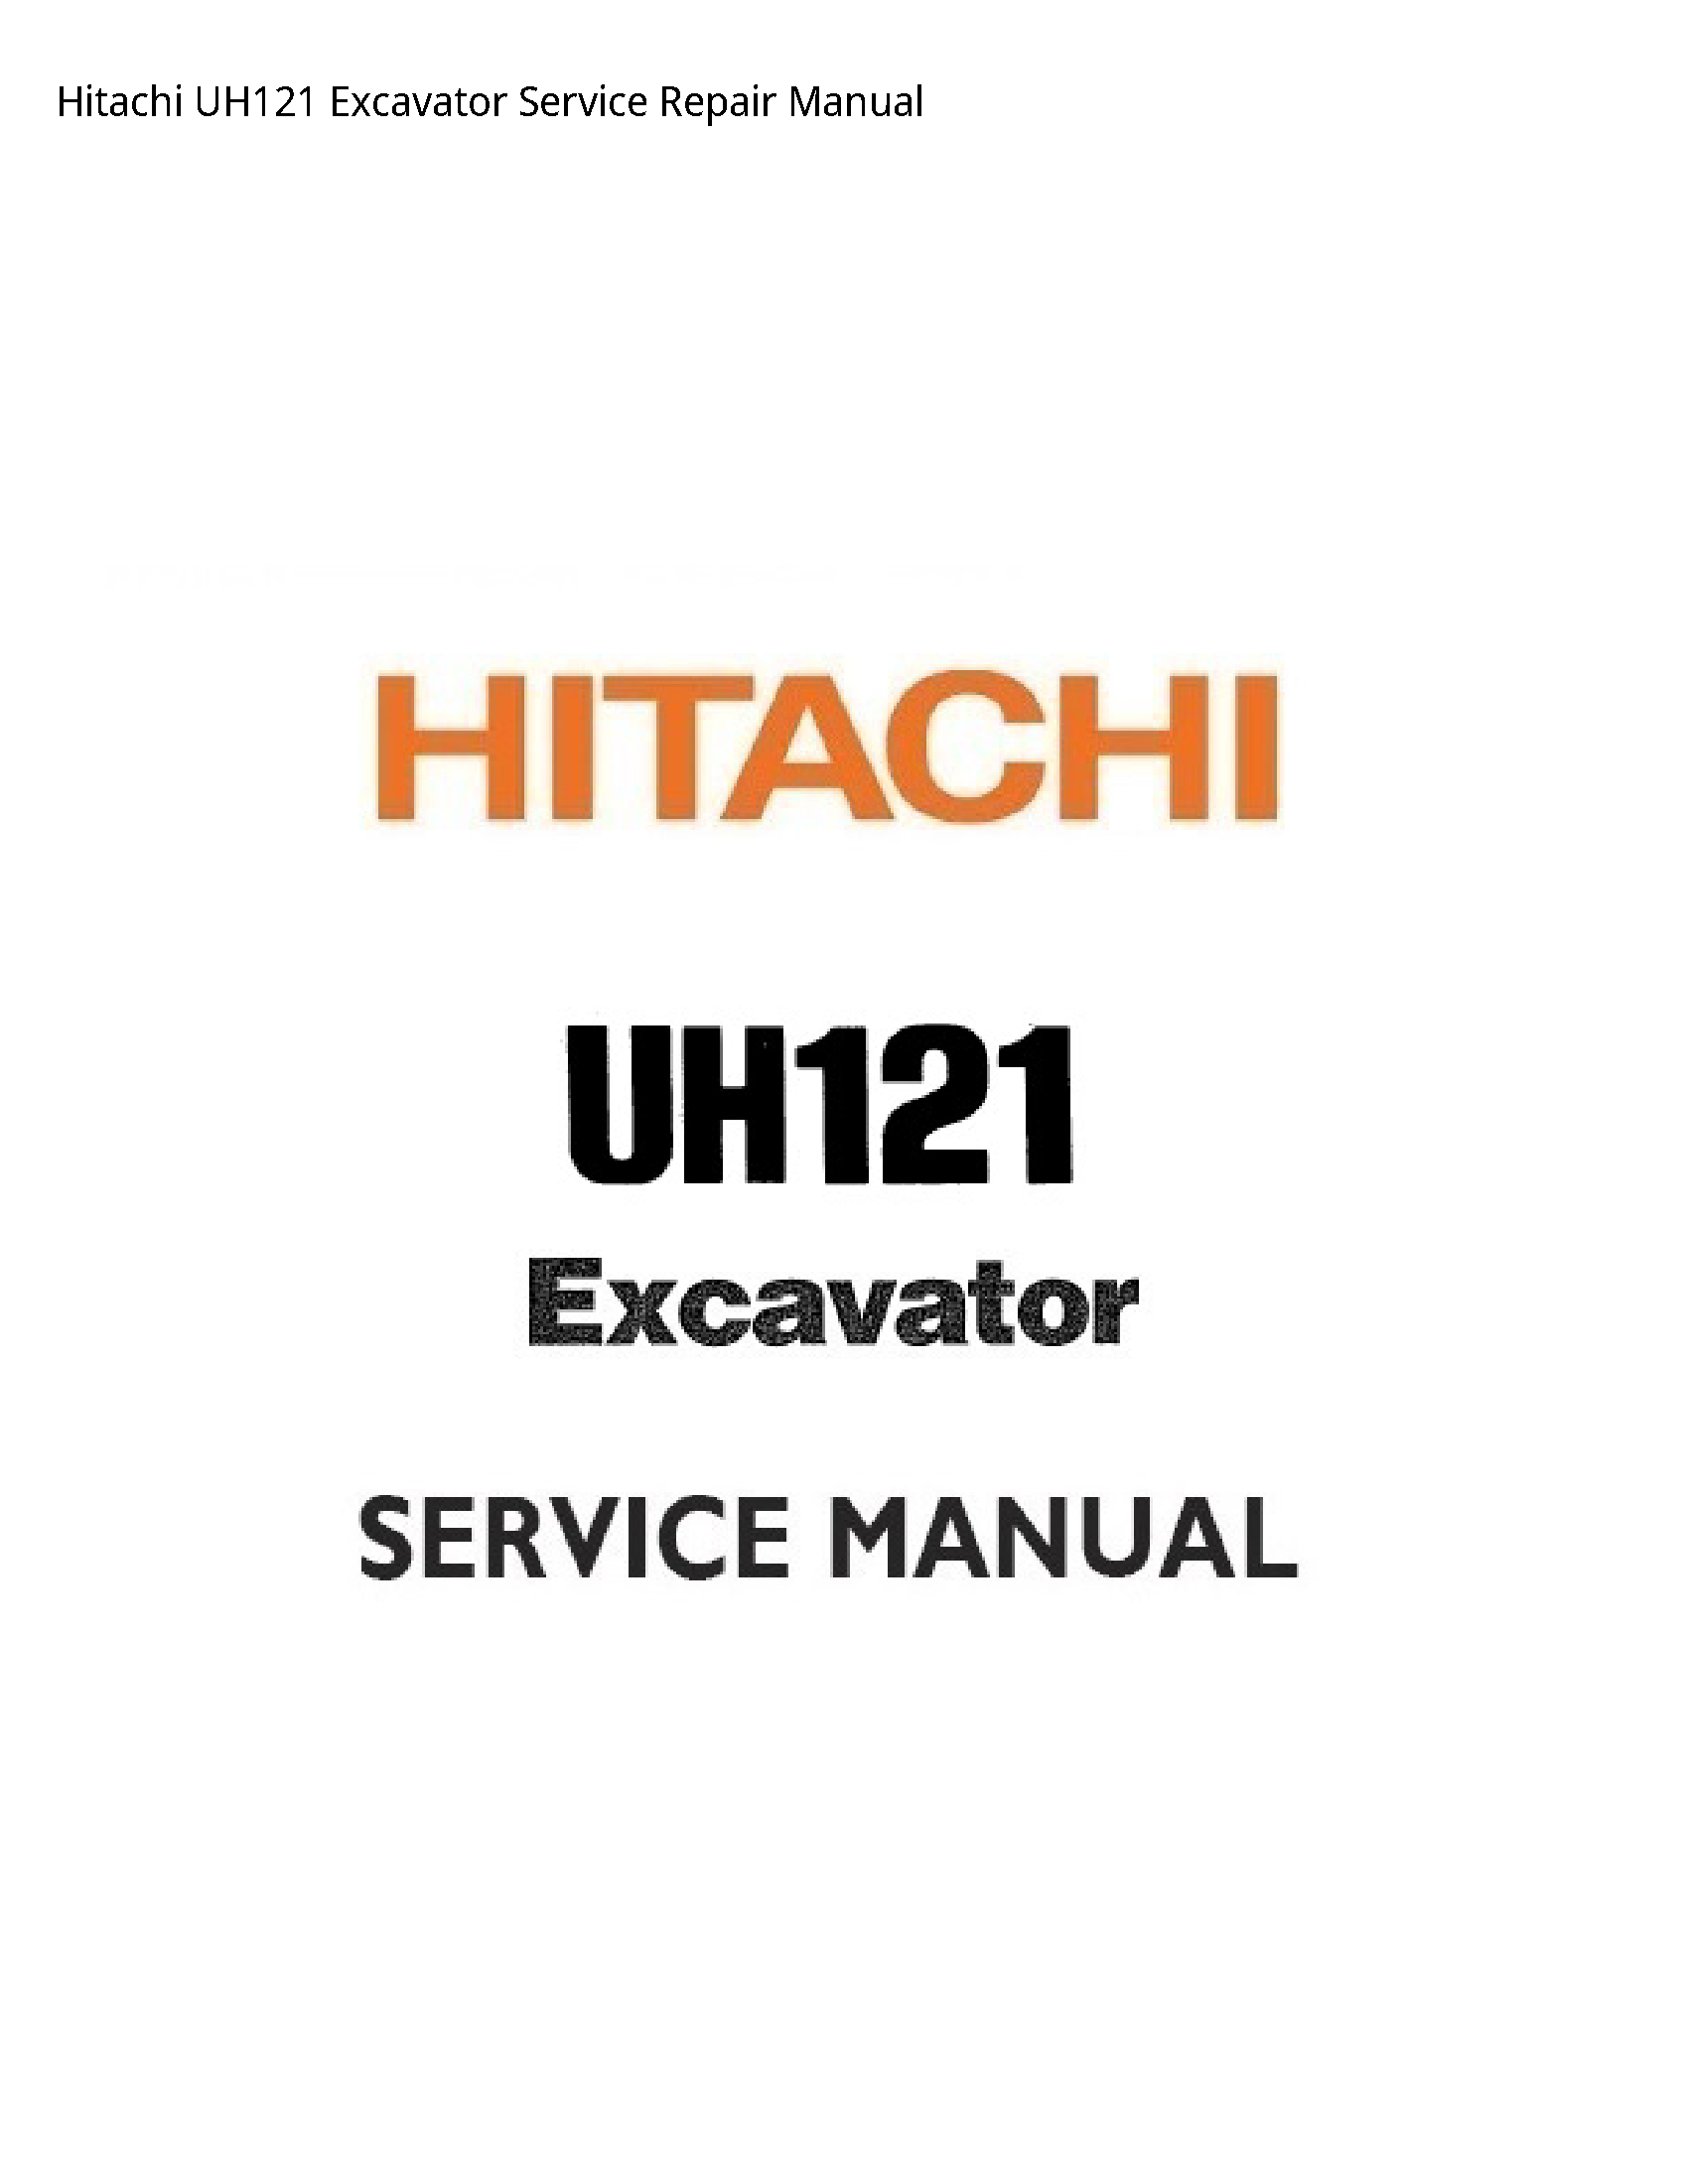 Hitachi UH121 Excavator manual